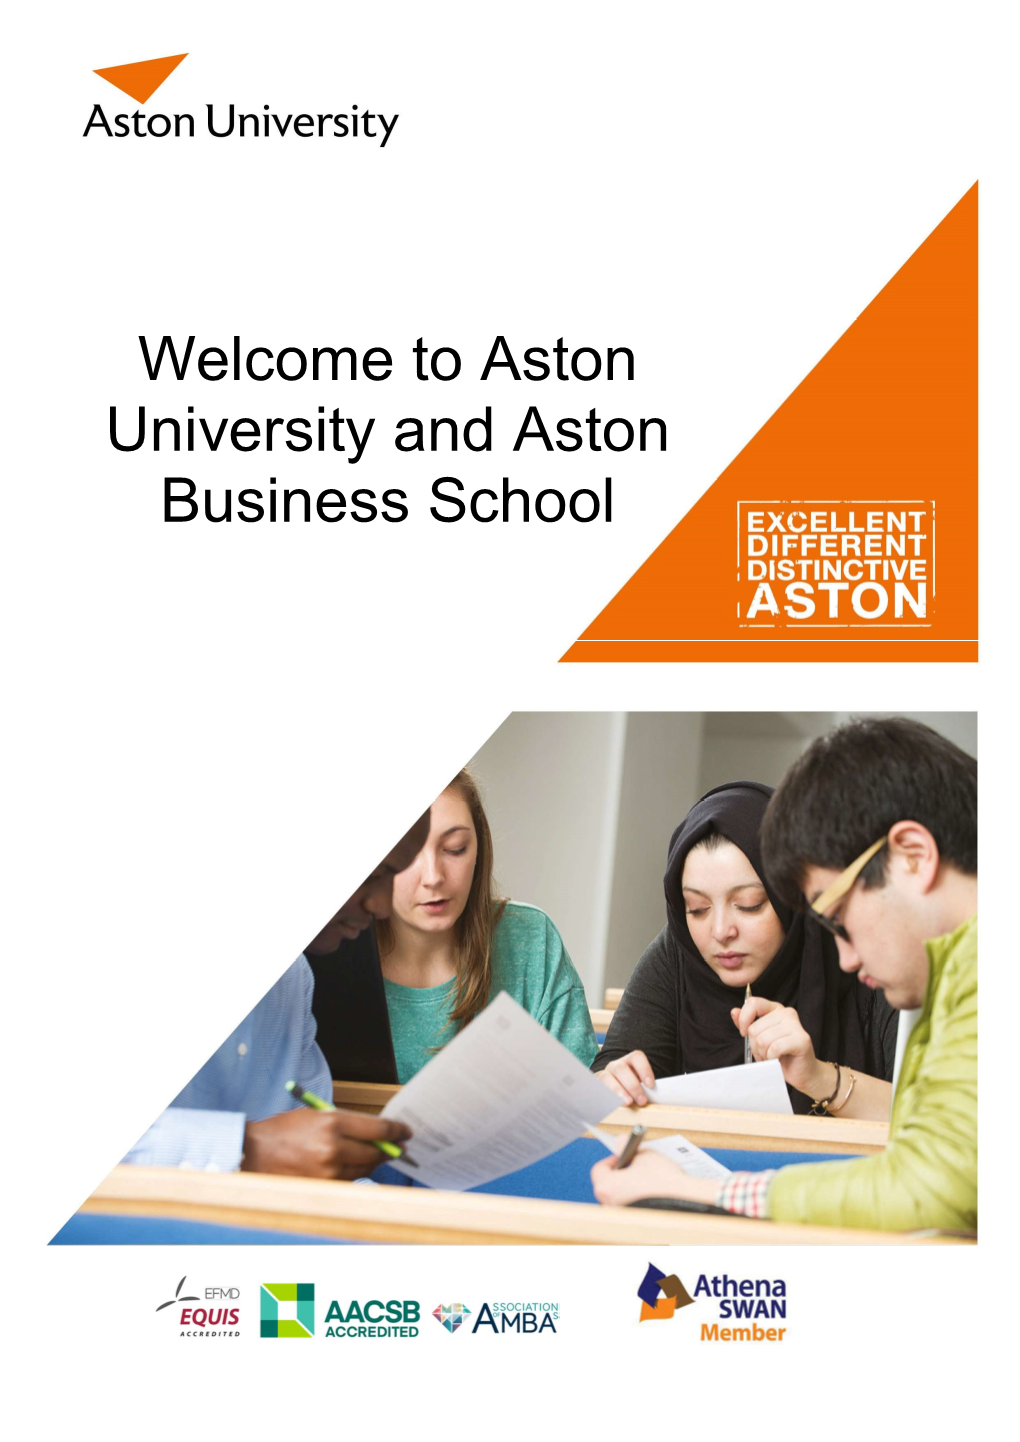 Aston University and Aston Business School